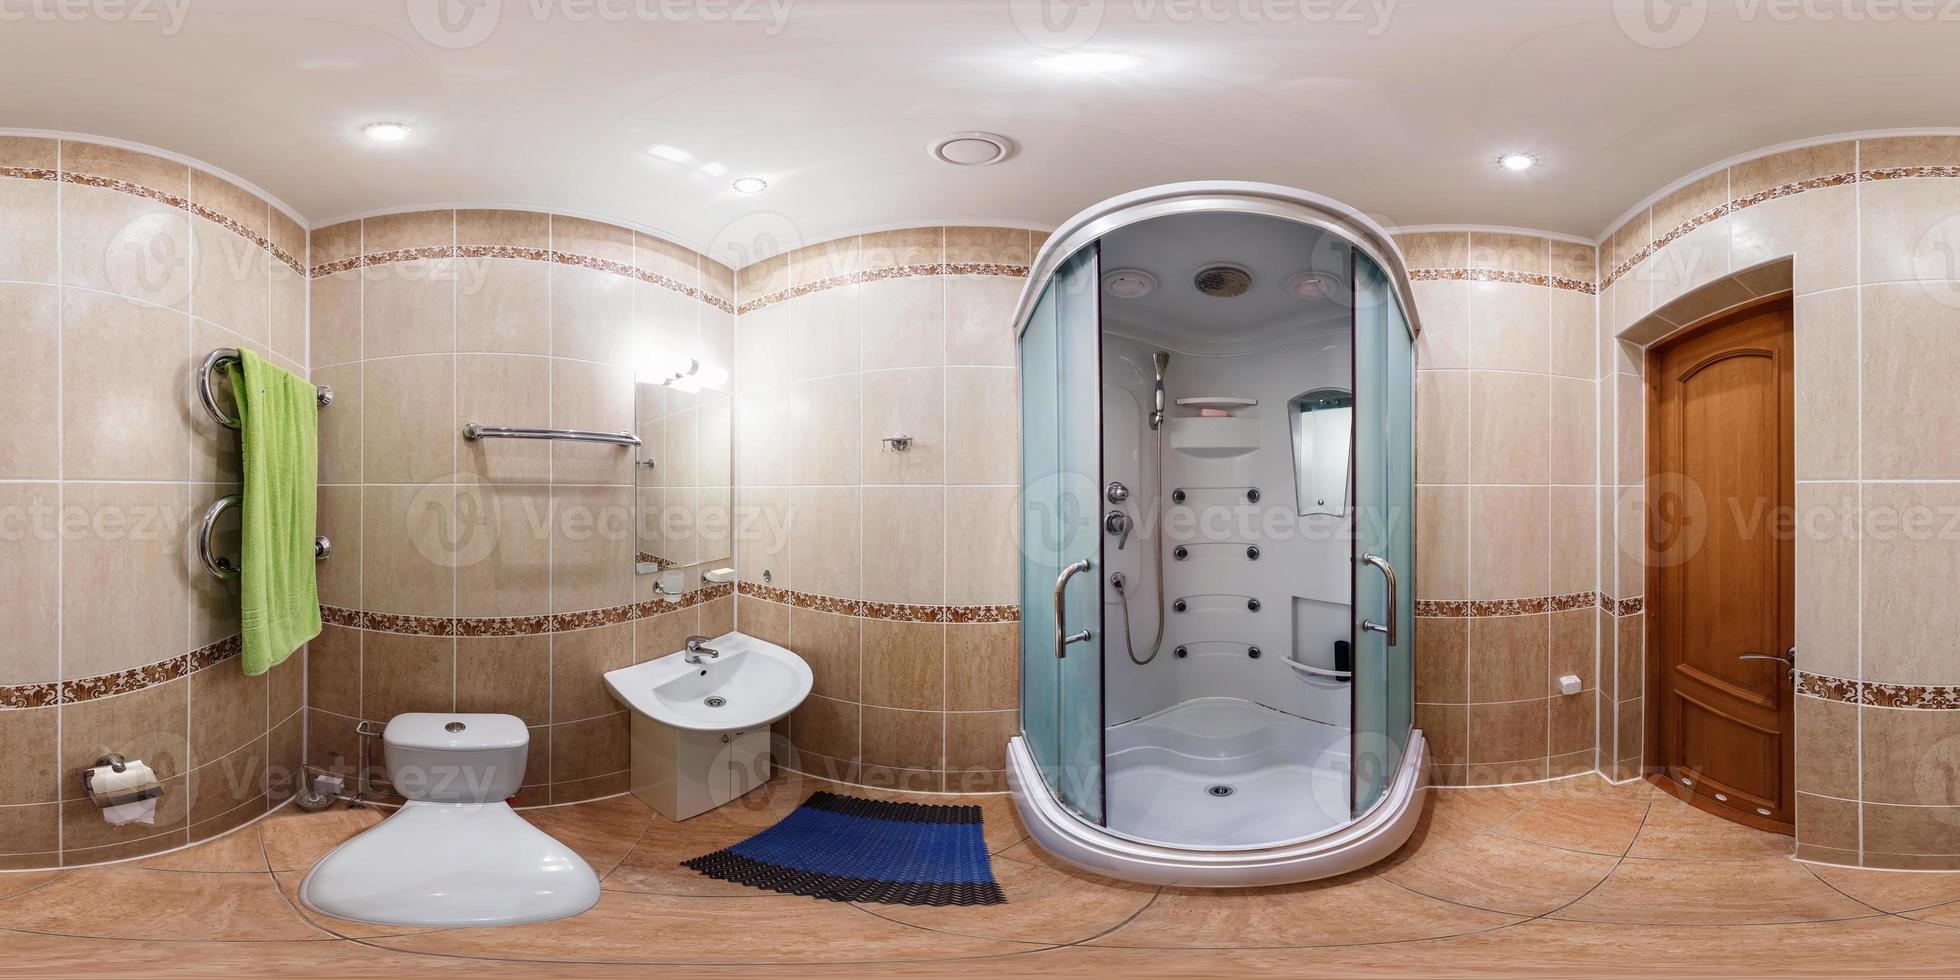 Panorama de 360 sin costuras en el interior del baño de un hotel barato, piso o apartamentos con inodoro, lavabo y ducha en proyección equirectangular con cenit y nadir. contenido vr ar foto